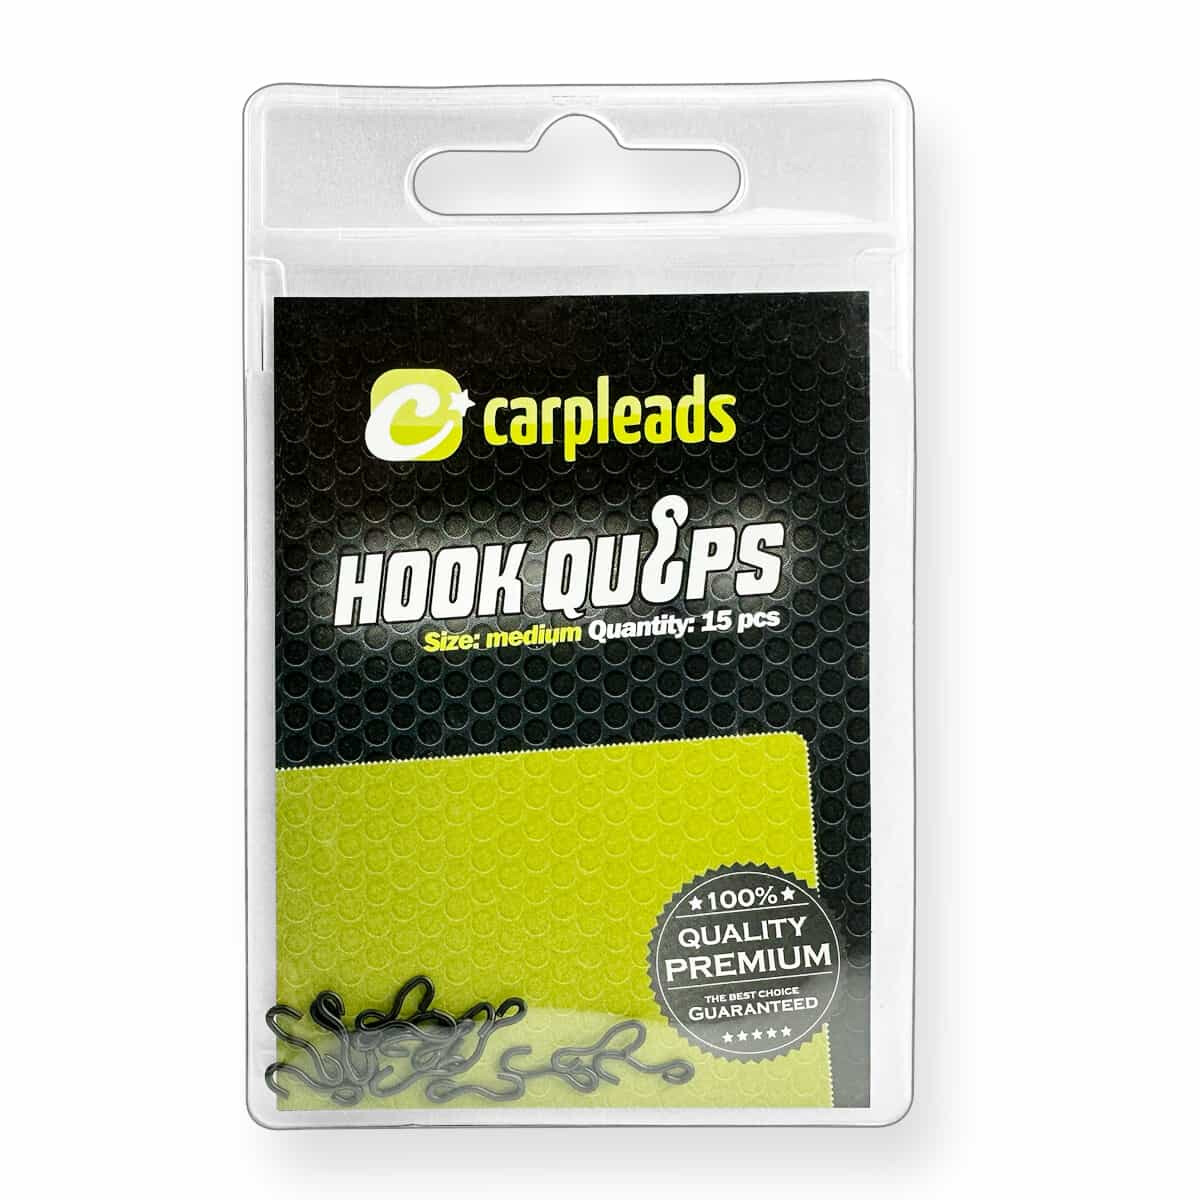 Carpleads Hook Quips - Medium